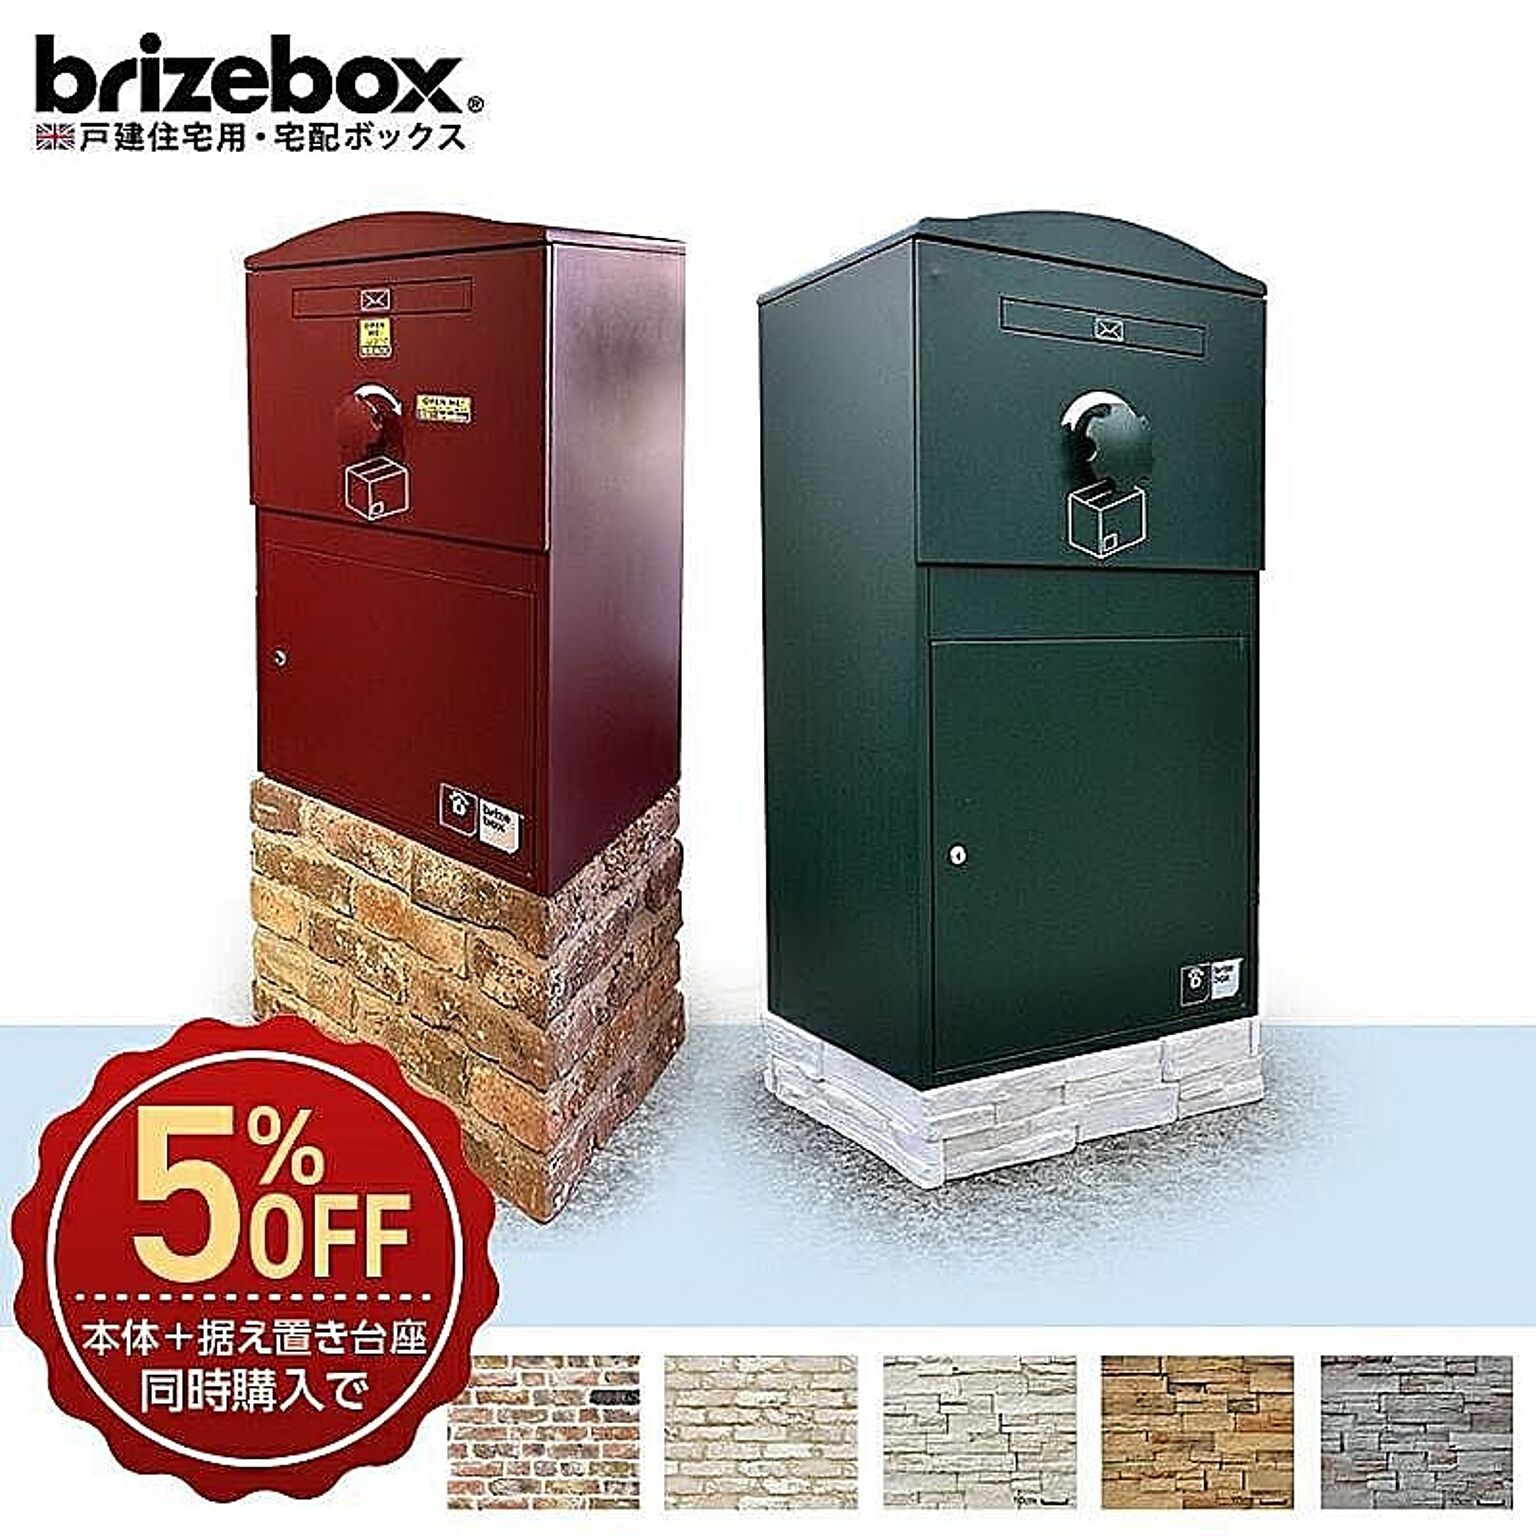 ボウクス Brizebox Large+据え置き台座MC-5（本体8色からお選びください） 通販  家具とインテリアの通販【RoomClipショッピング】